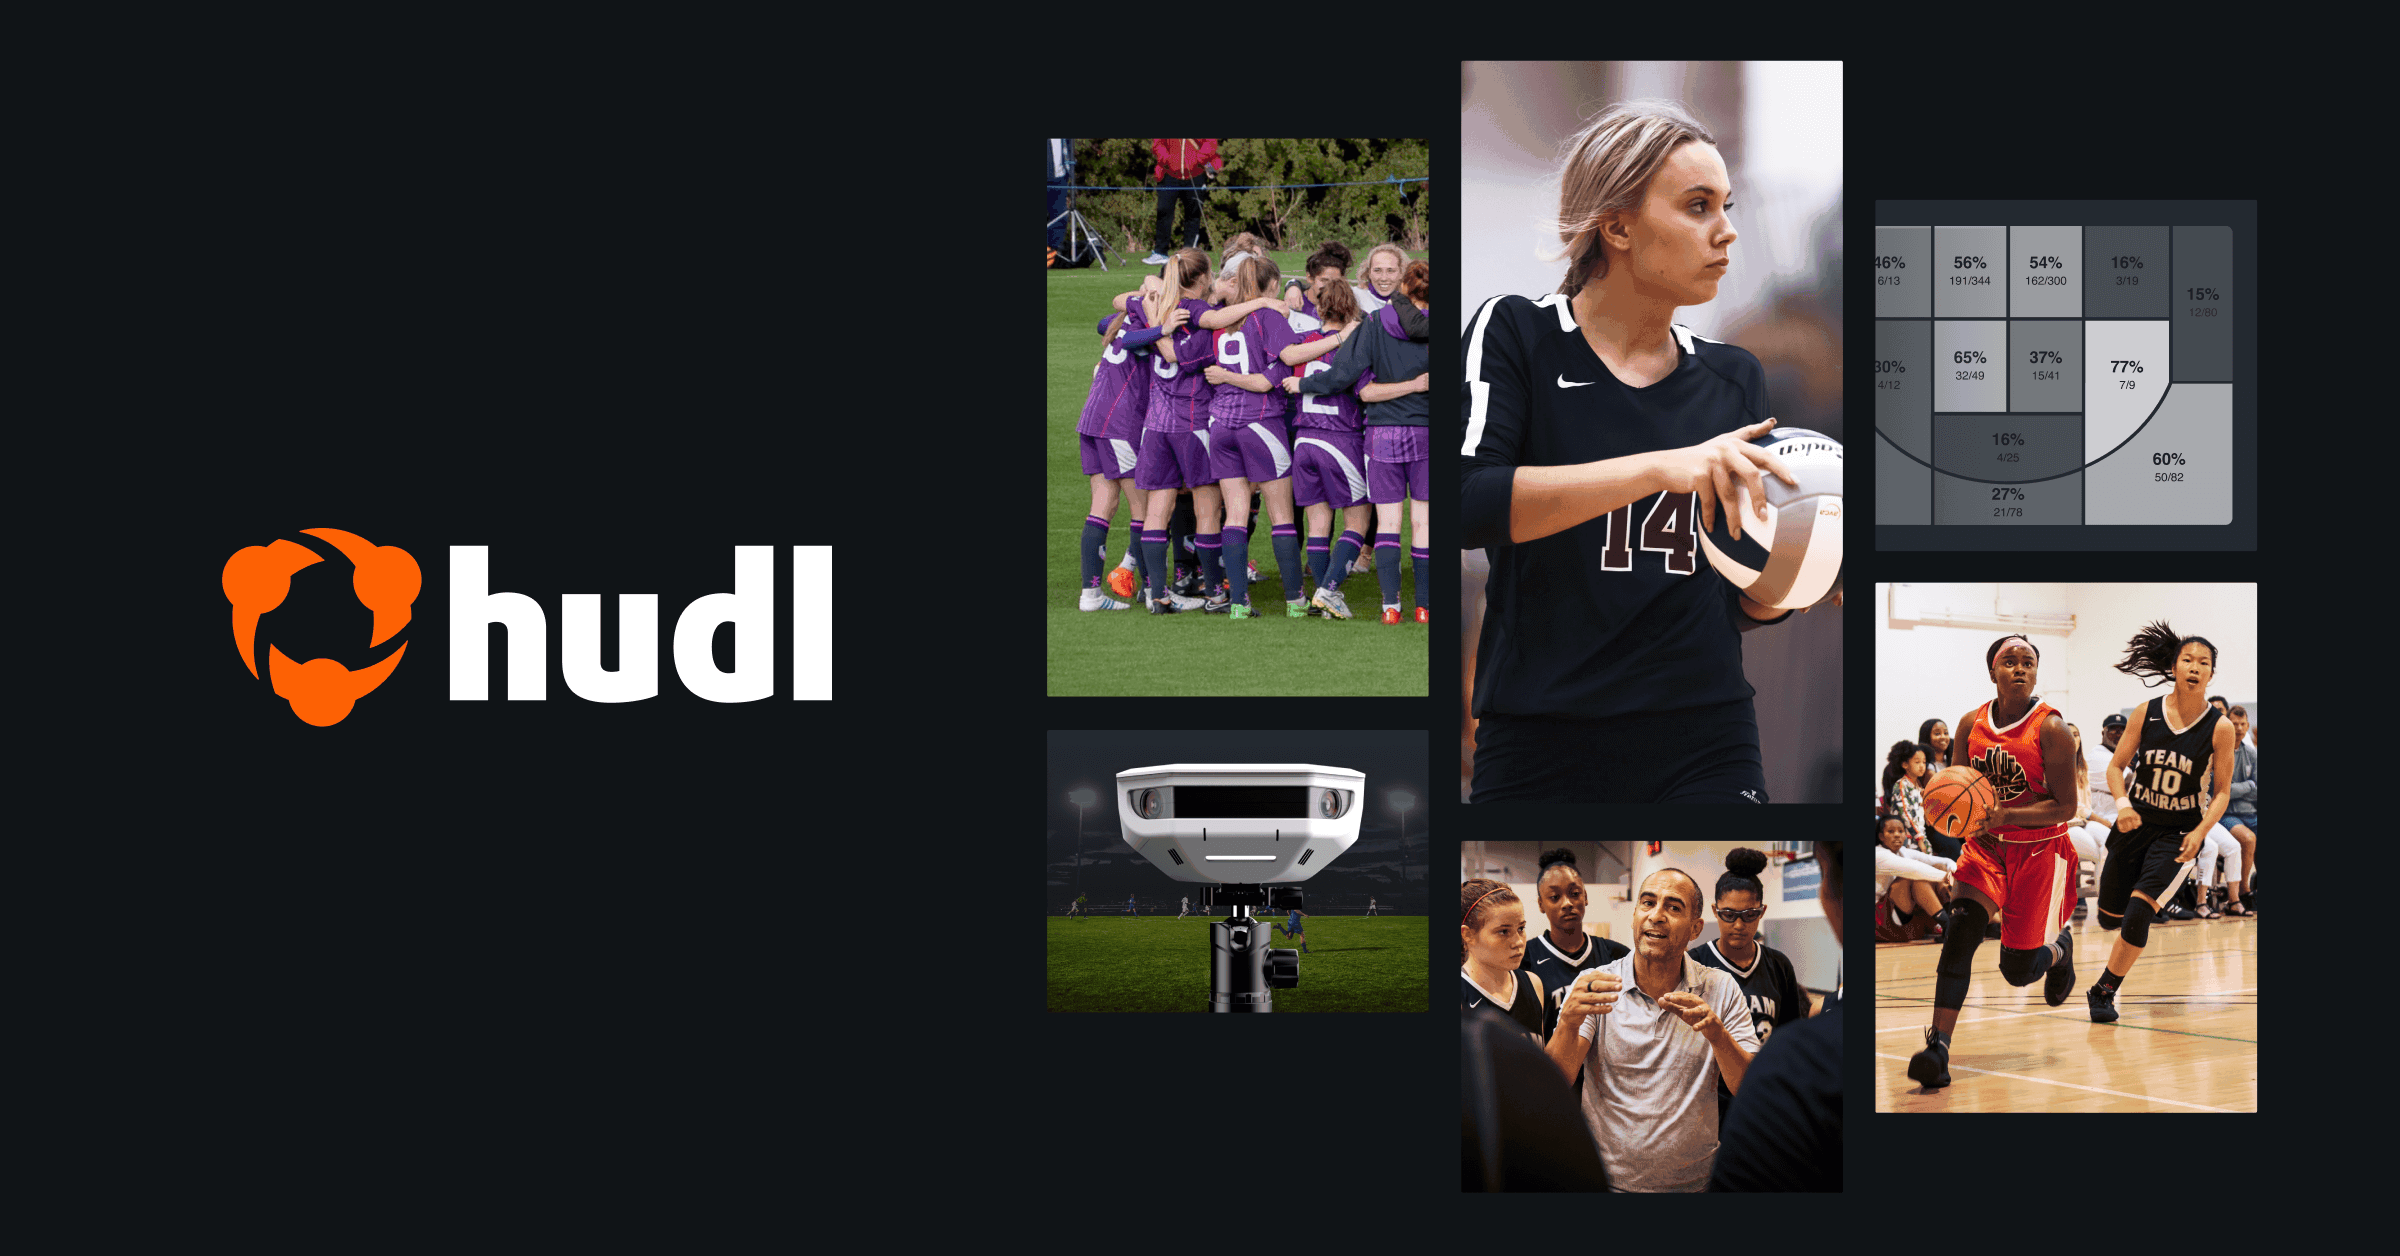 hudl-club-sports-solutions-og-1702009771.png